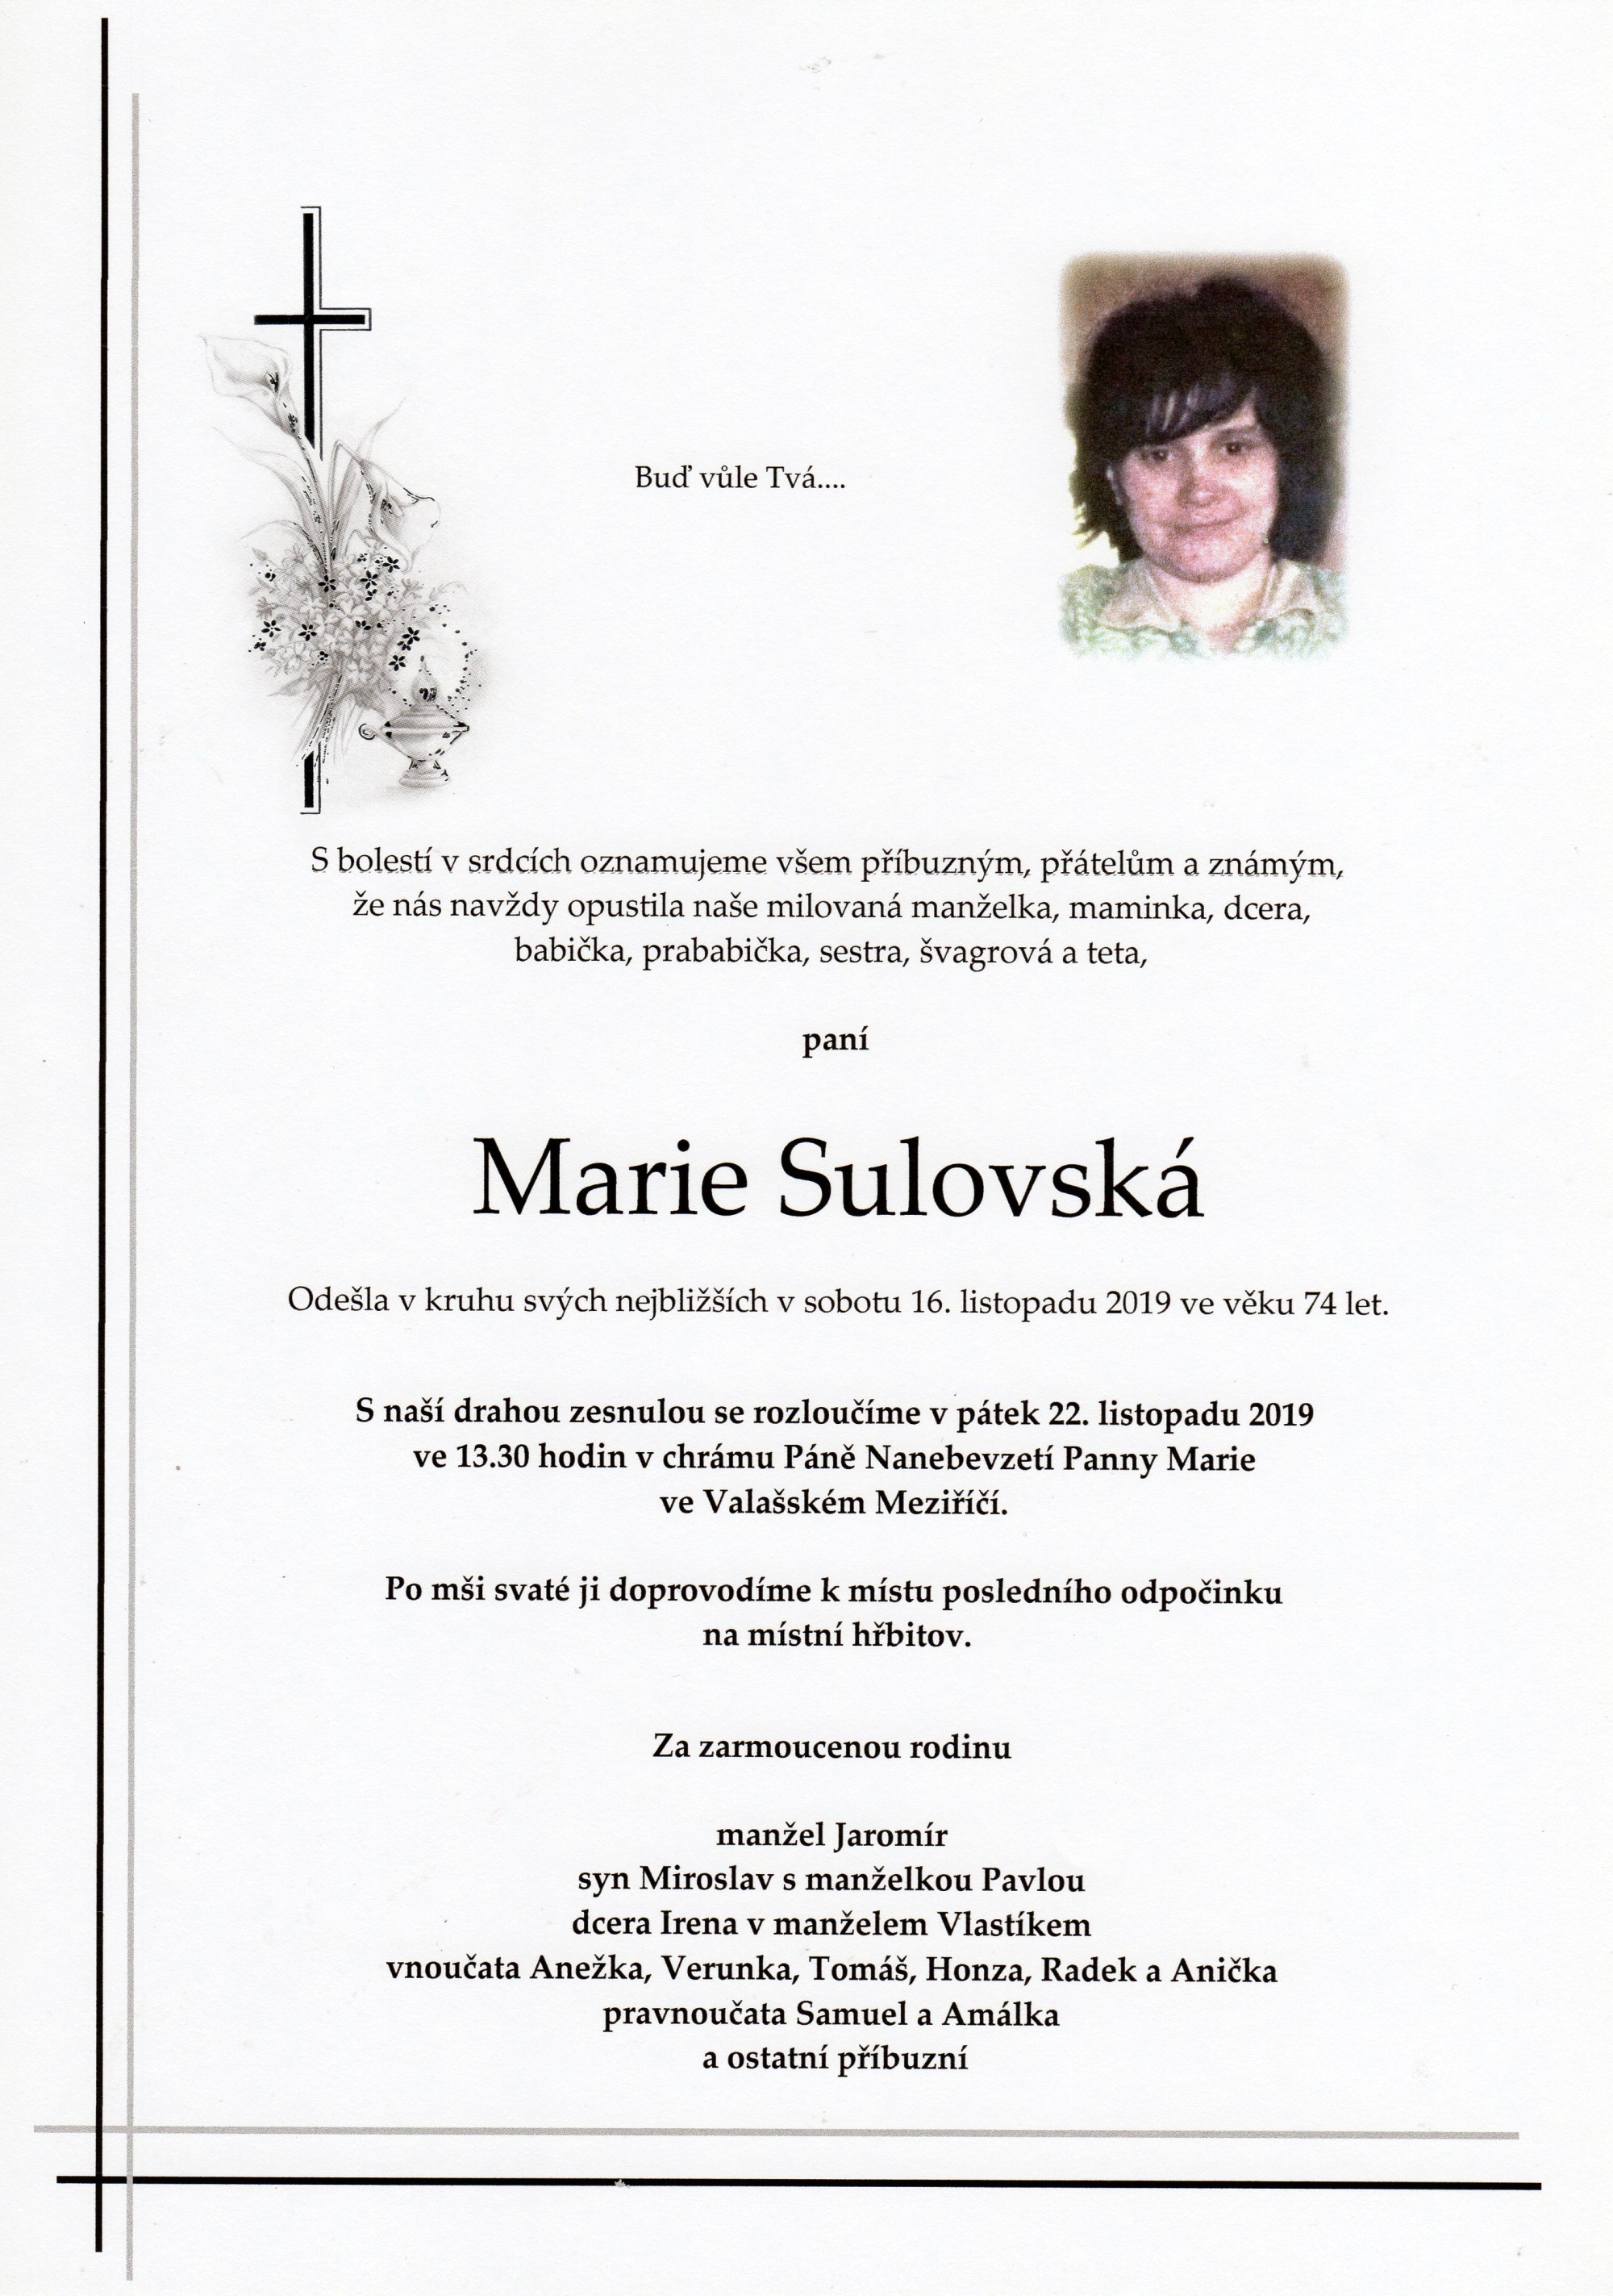 Marie Sulovská